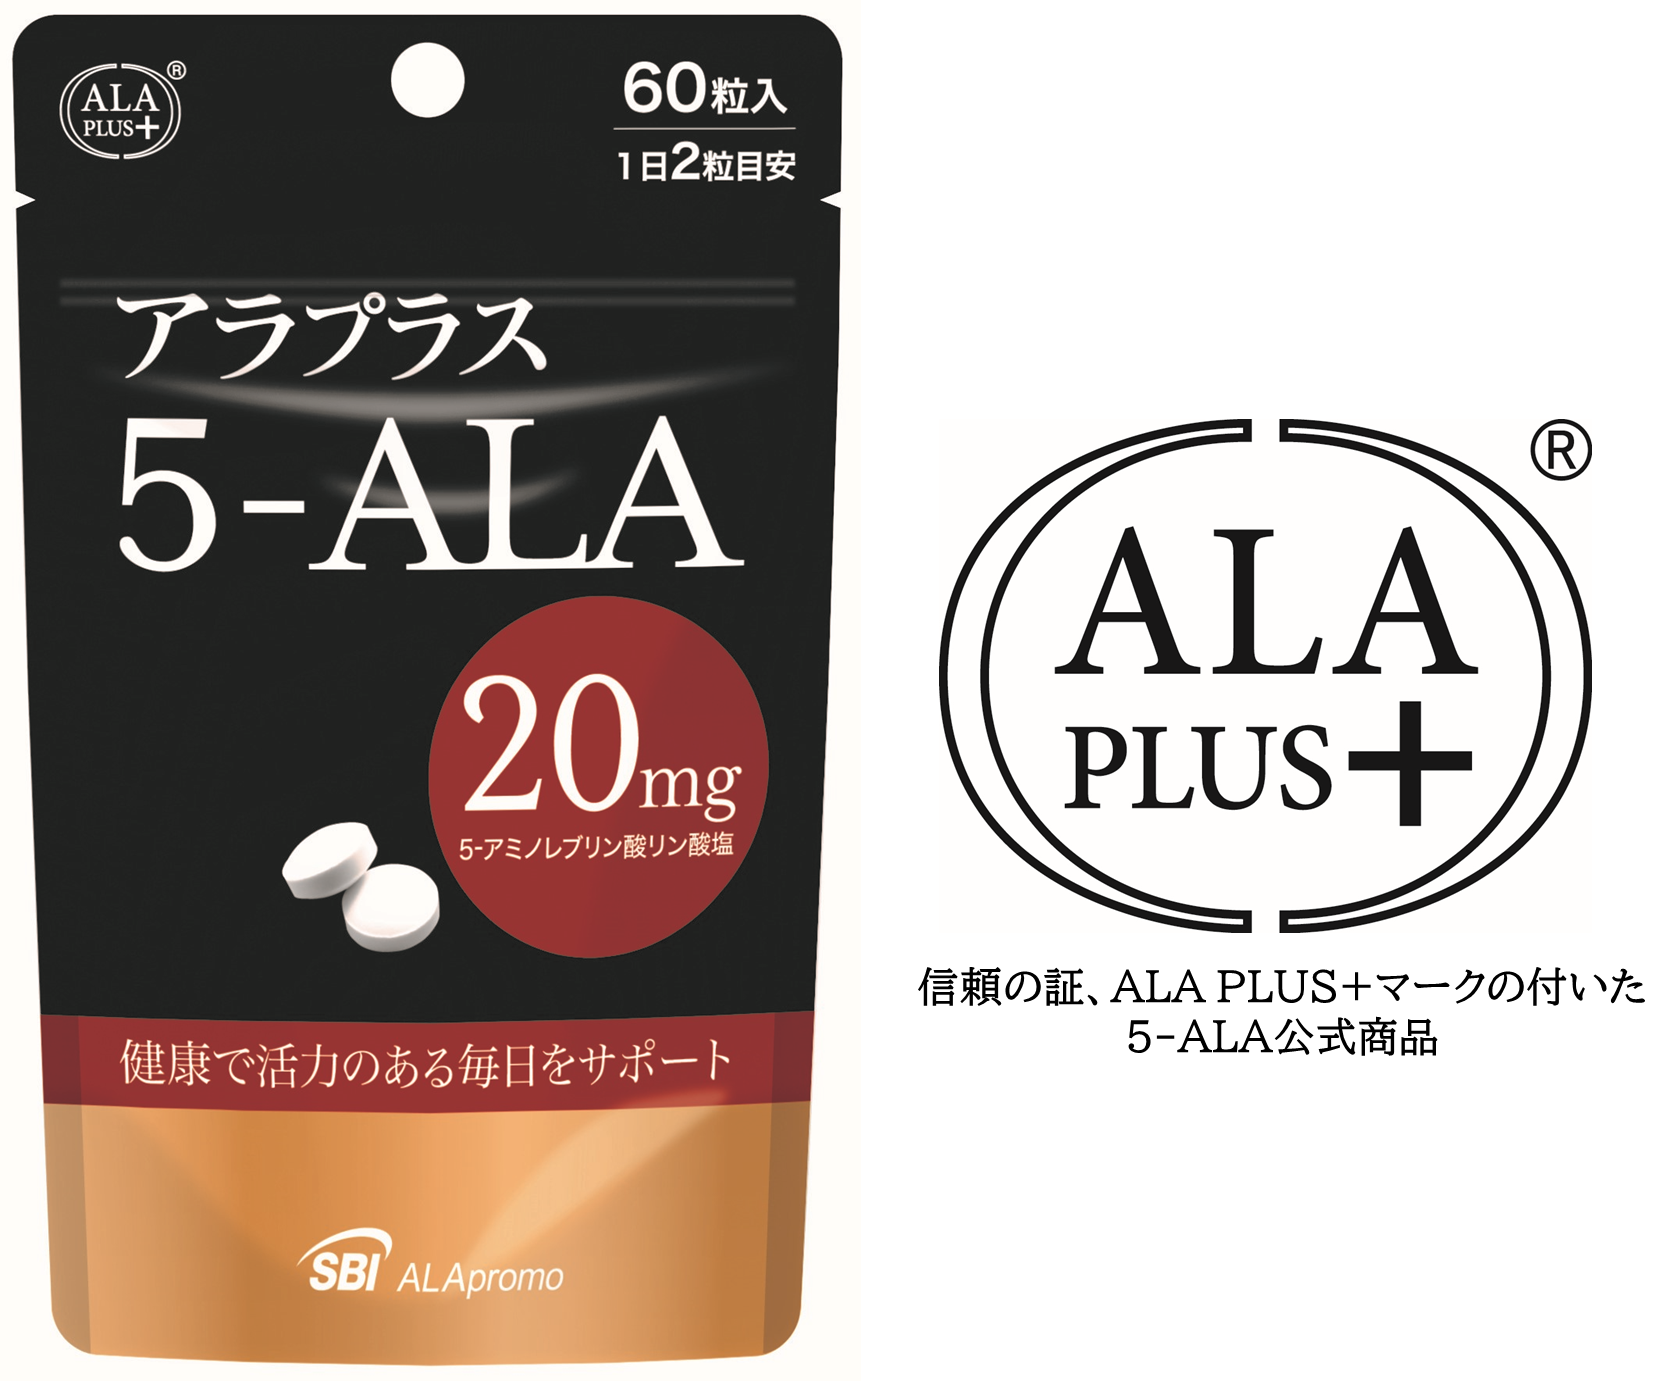 話題の5-ALA配合正規サプリメント「アラプラス 5-ALA20」が8月2日に新 ...